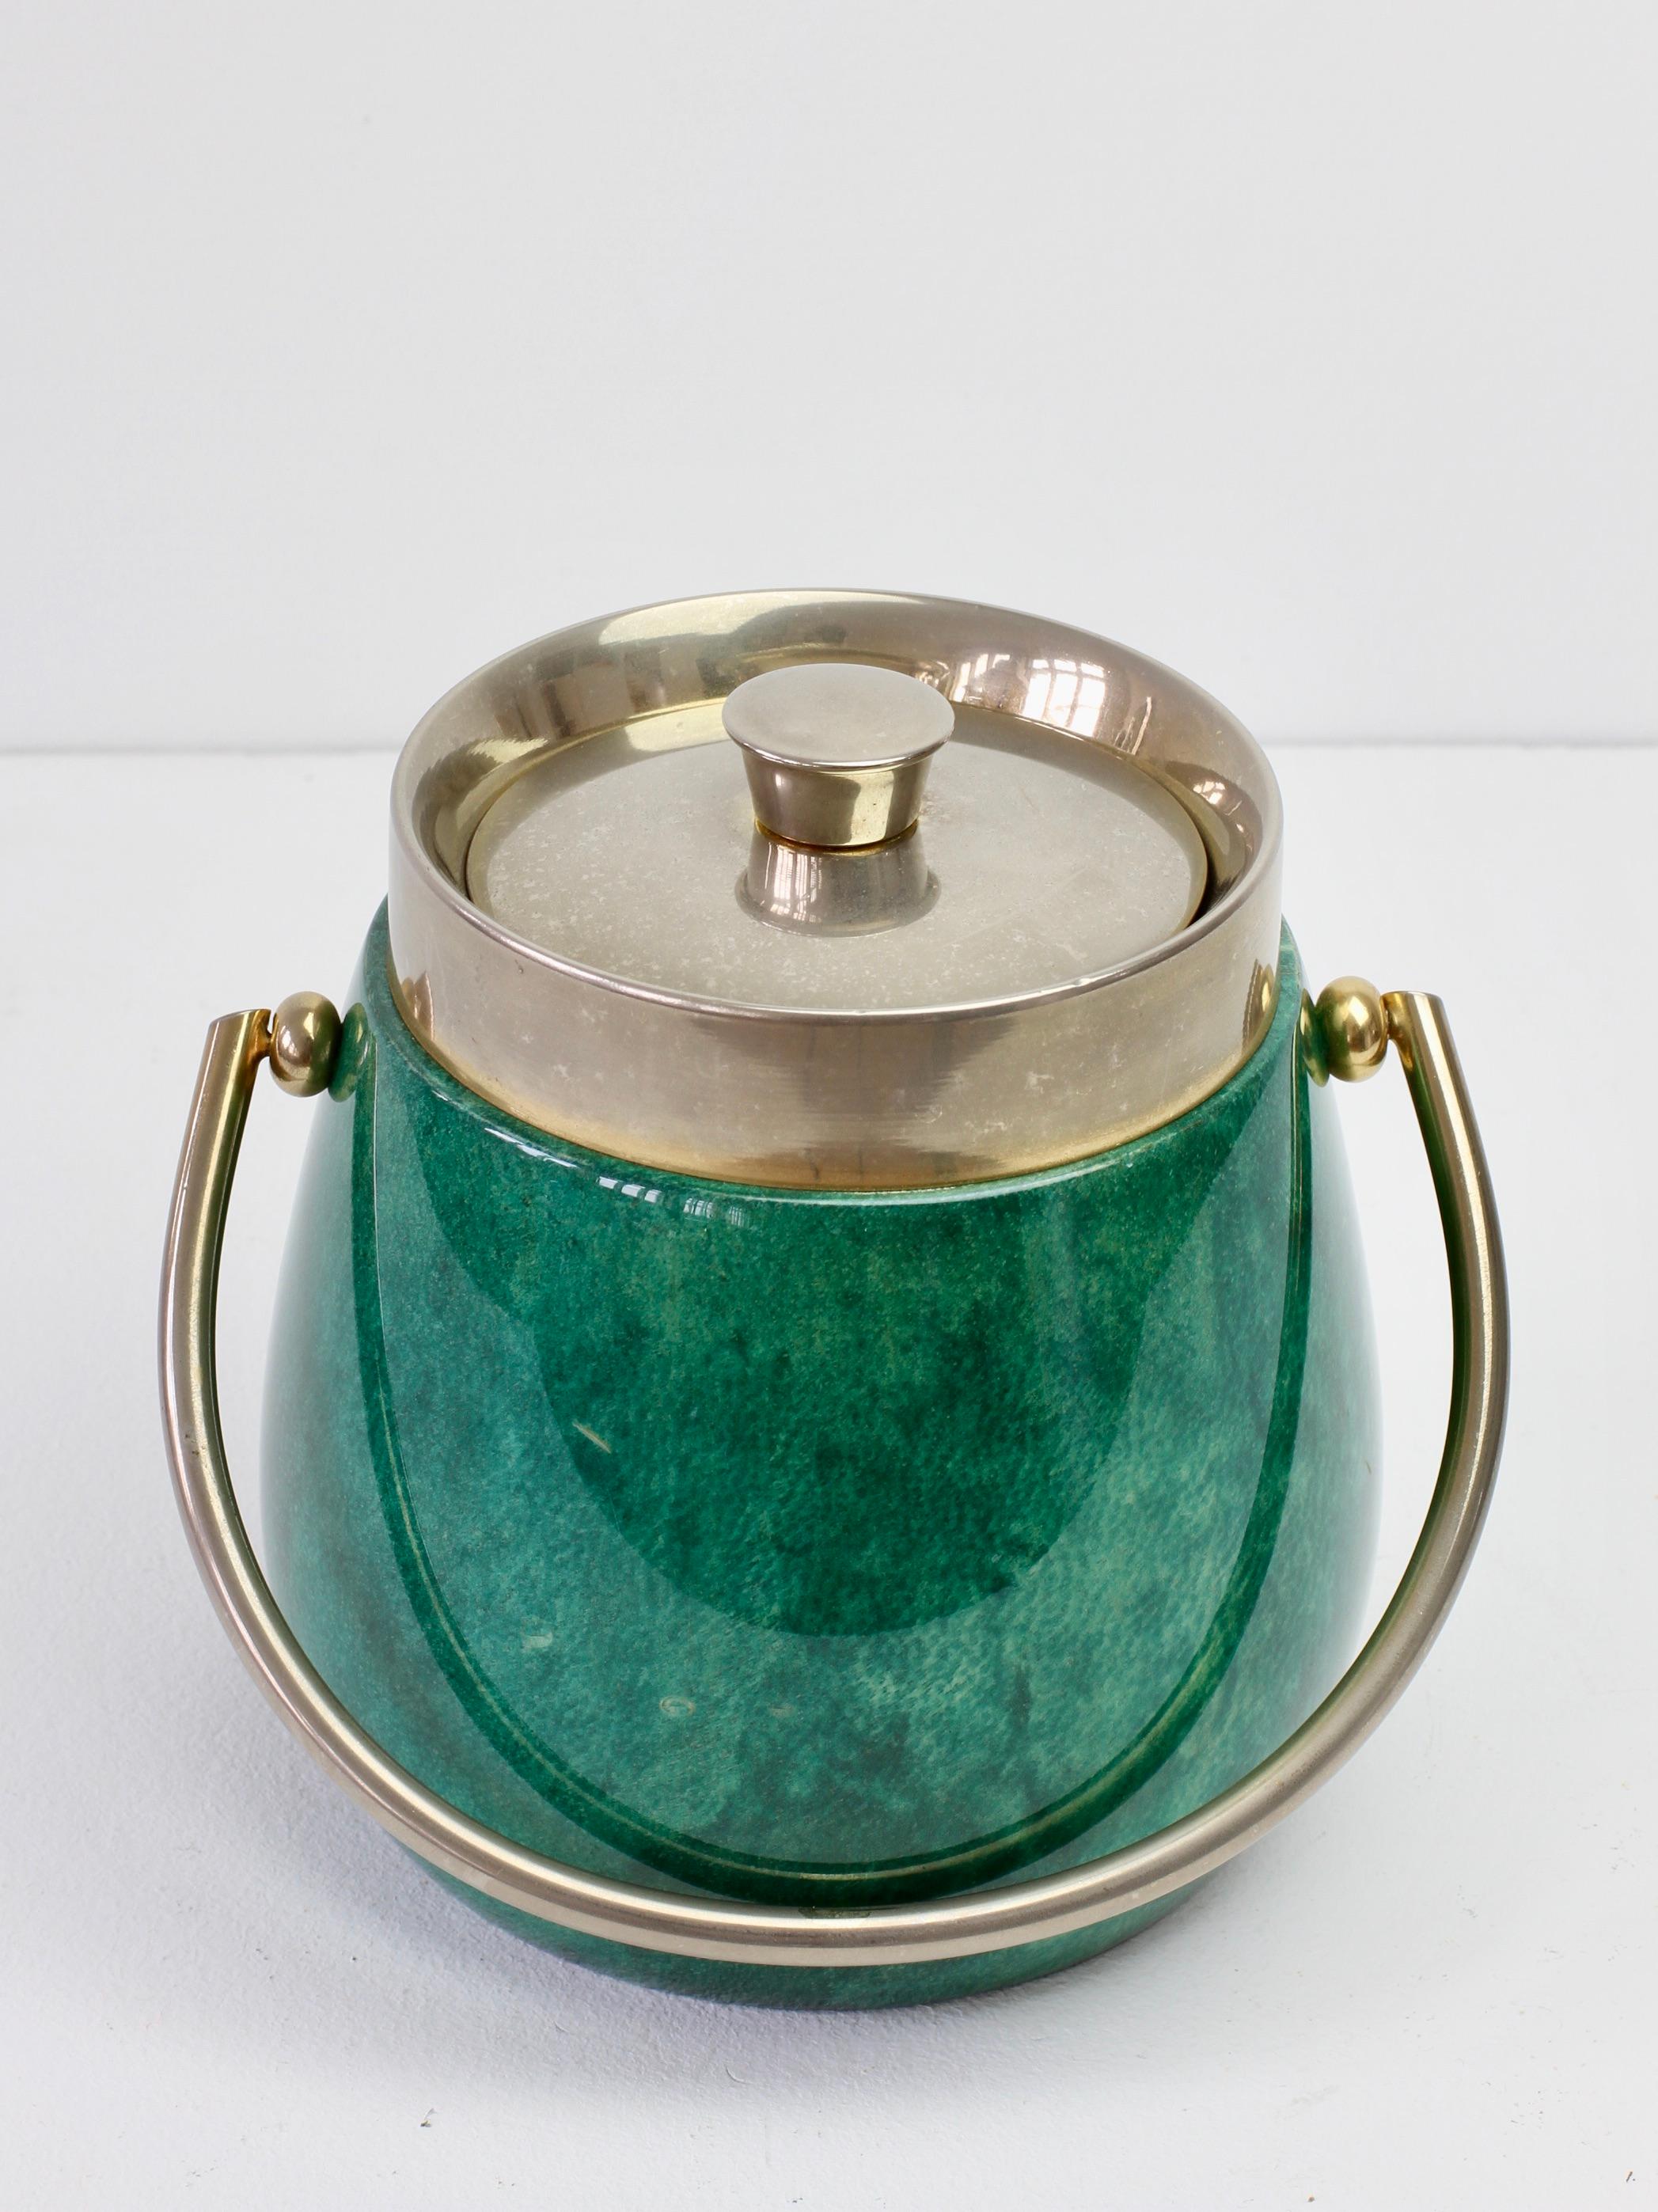 Aldo Tura 1960s Vintage Midcentury Ice Bucket in Green Italian Goatskin 2